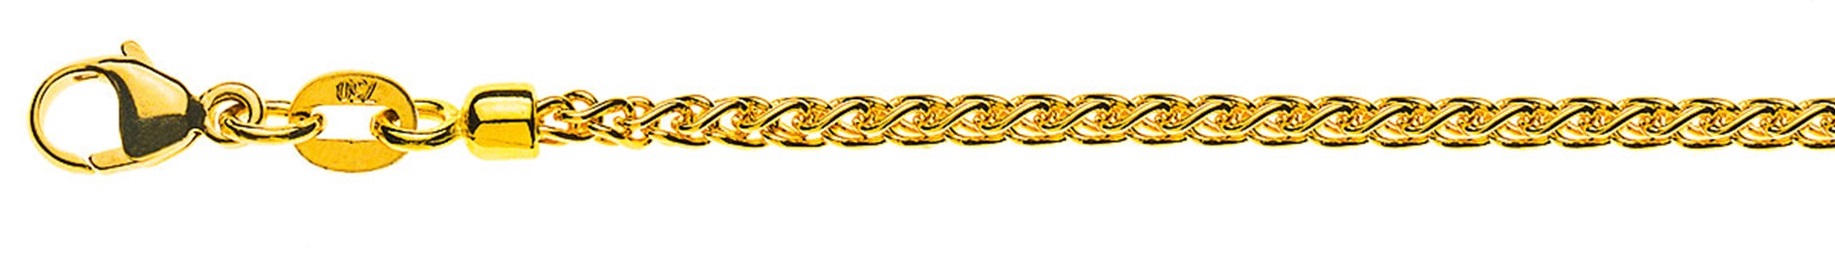 AURONOS Prestige Collier or jaune 18K chaîne câble 50cm 2.15mm